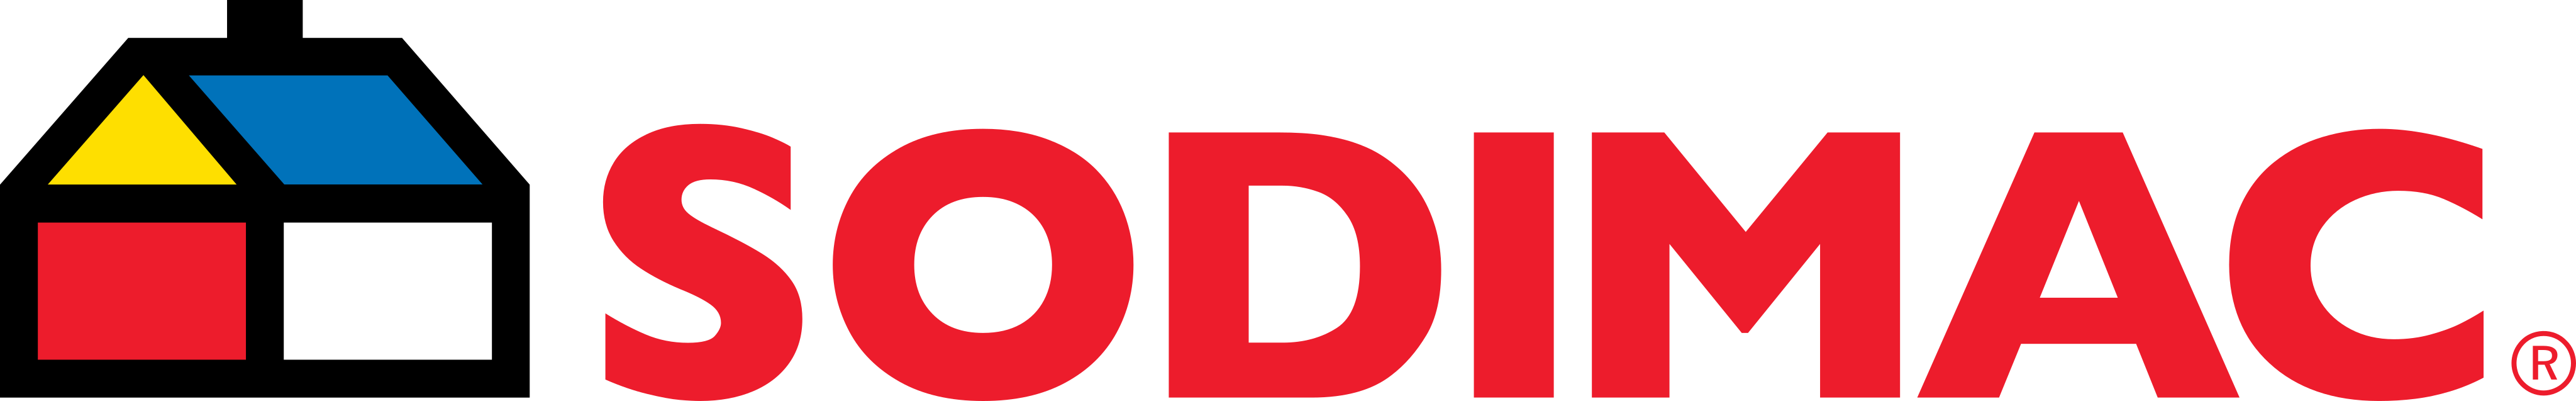 sodimac-logo